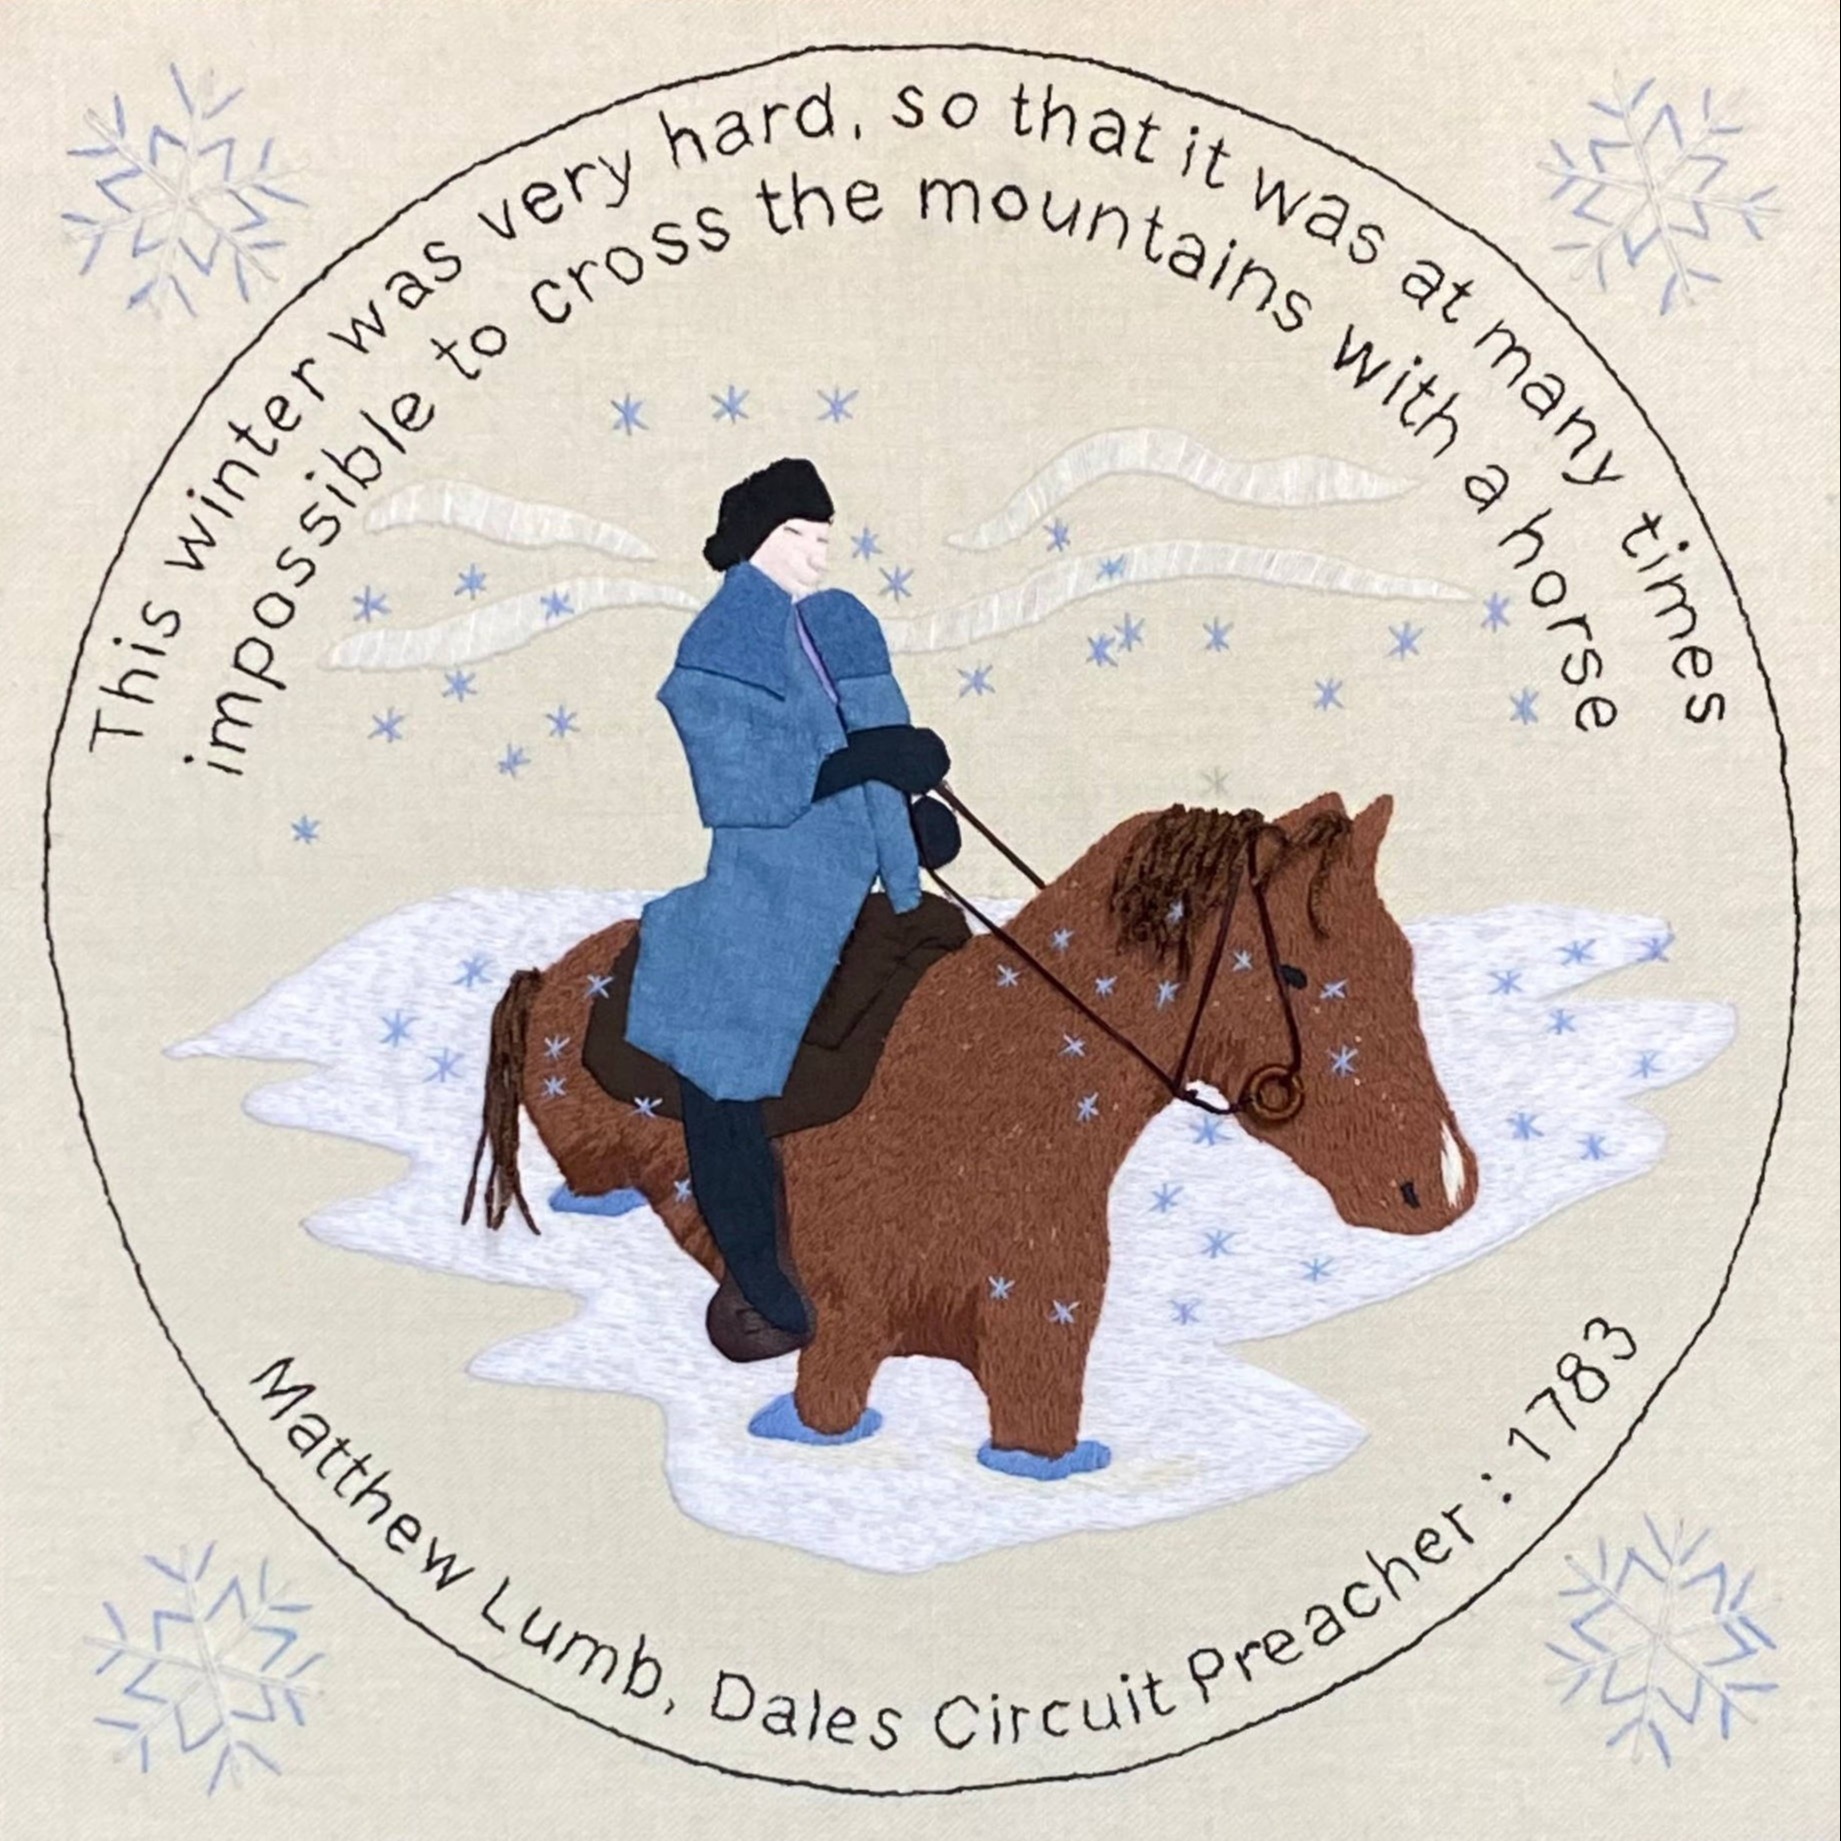 Needlework showing man on horseback travelling through snow